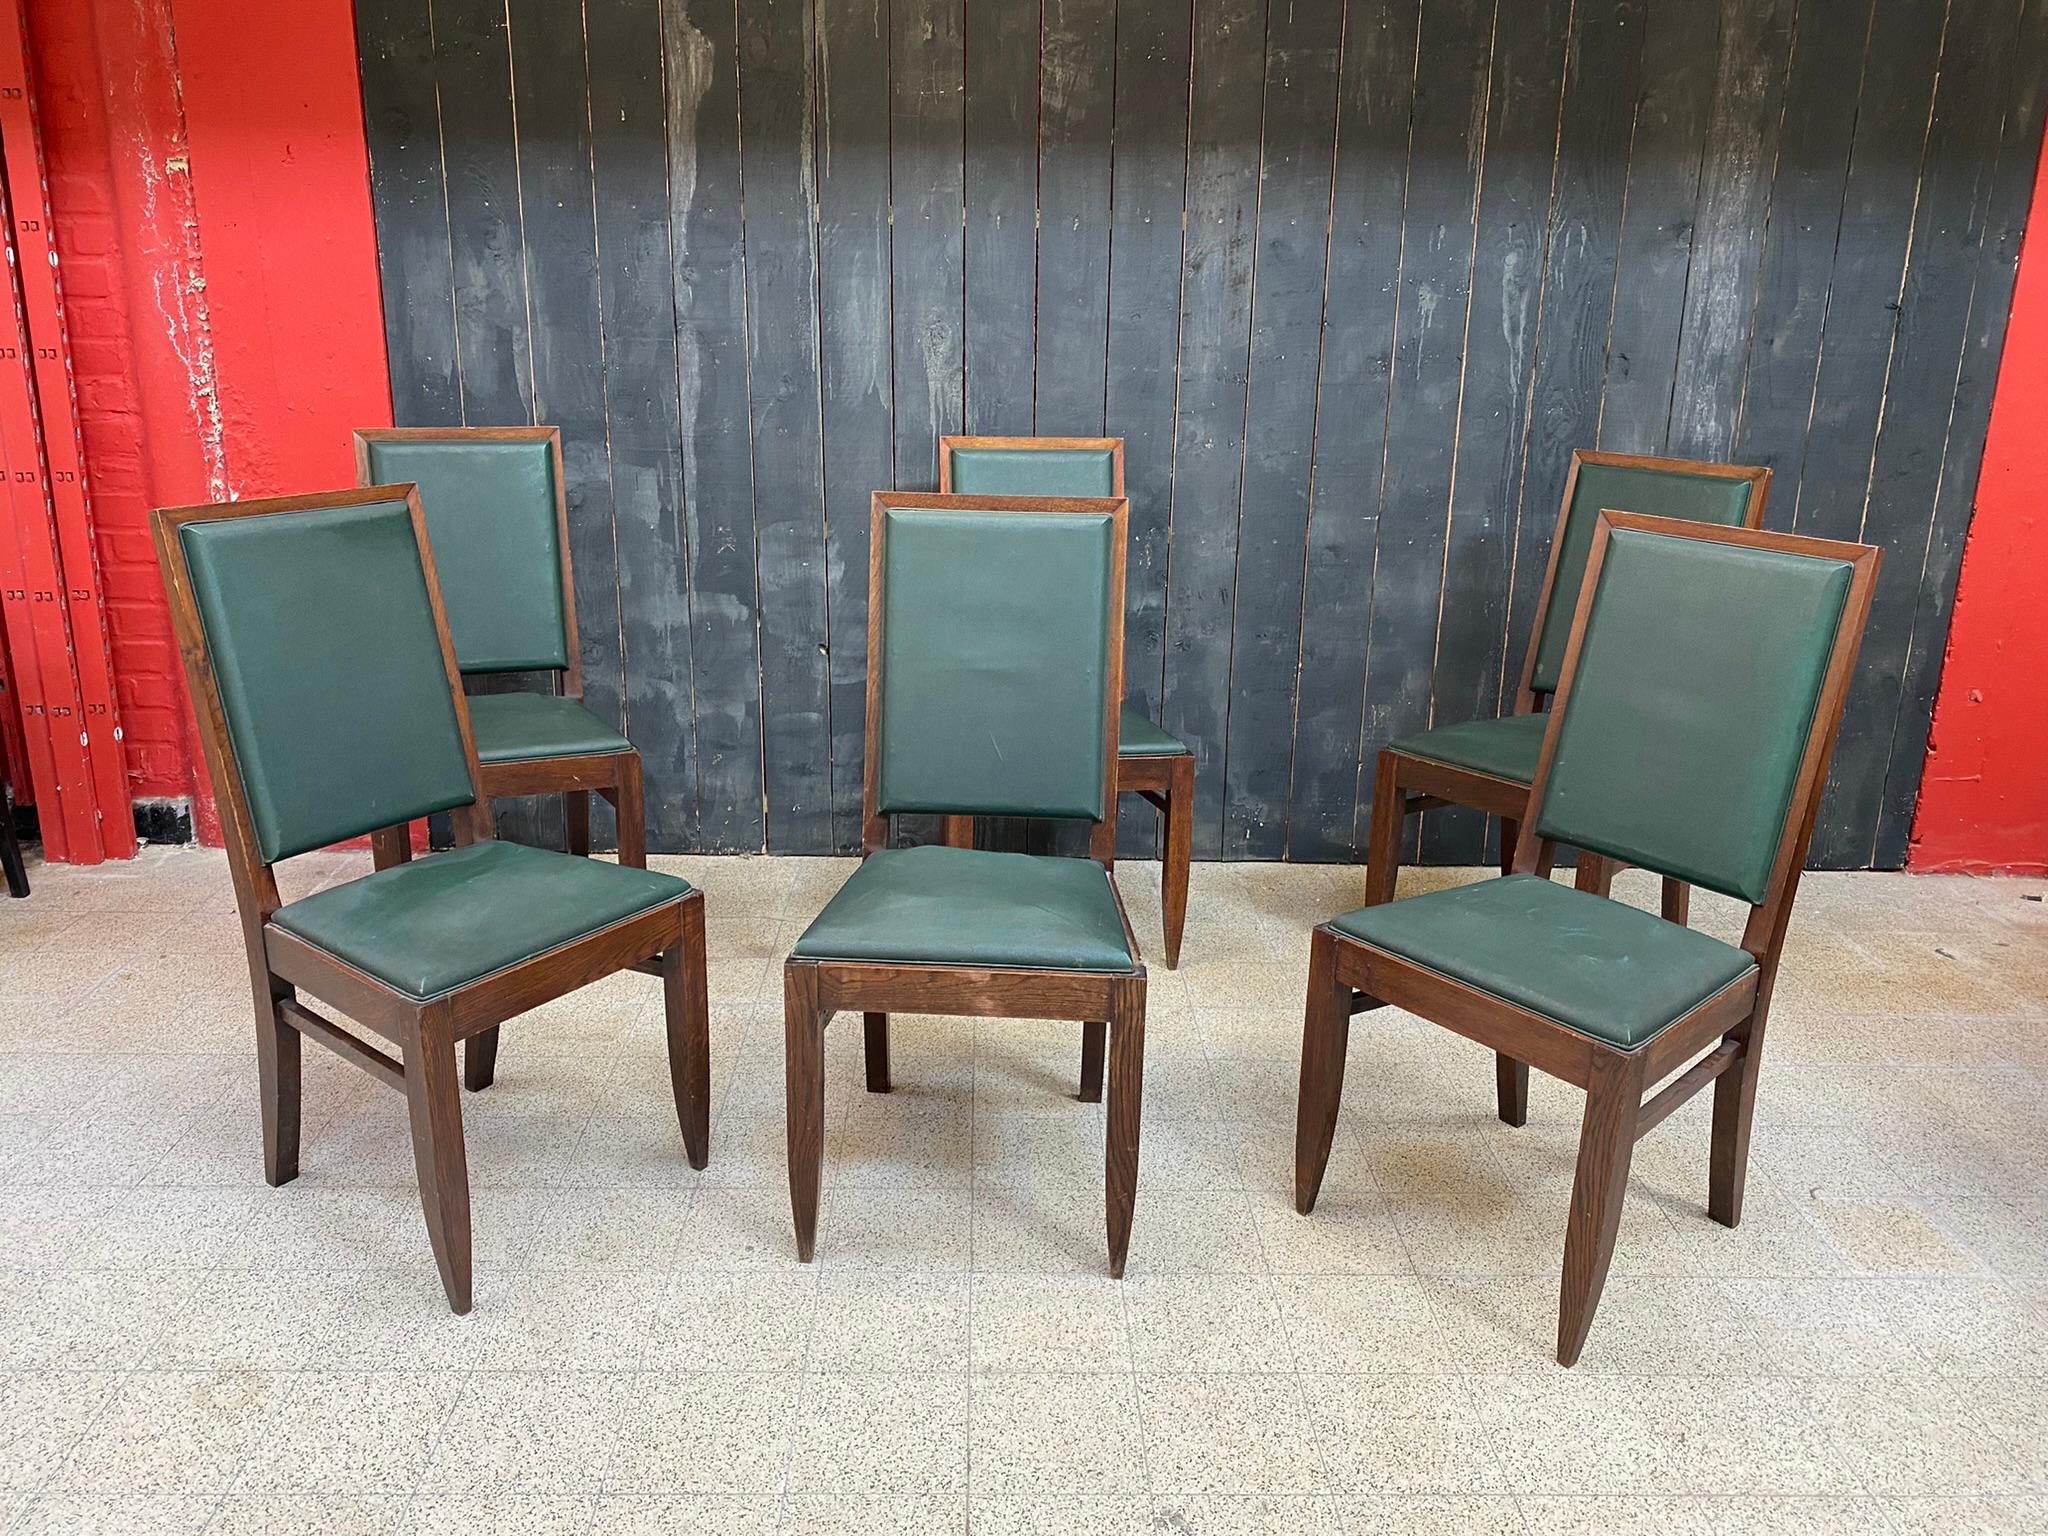 Gaston Poisson, Satz von sechs Art Deco Stühlen aus Eiche um 1930/1940
die Beschichtung geändert werden muss.